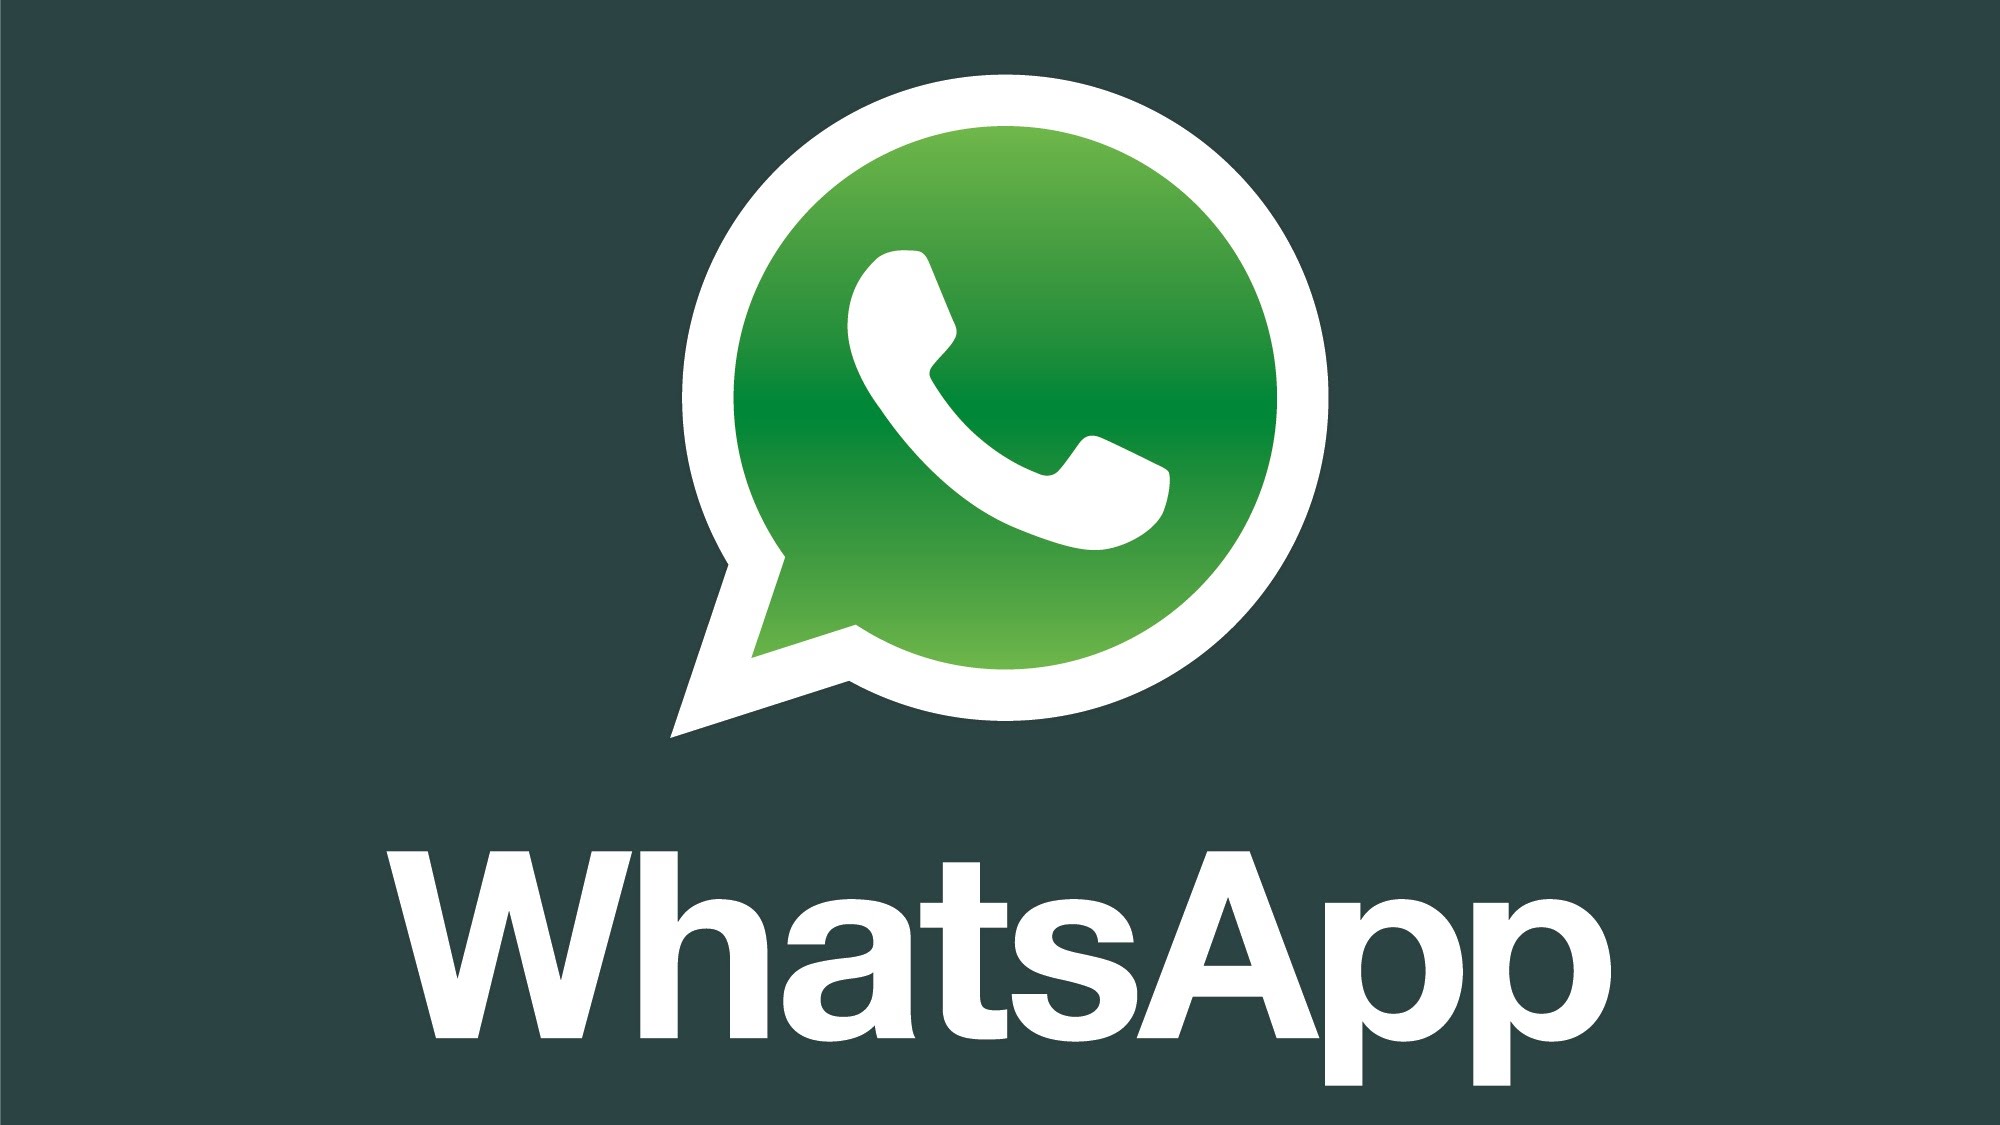 شركة واتساب تجبر مستخدميها على شراء نوع محدد من الهواتف تعرف عليه وعلى الأسباب وراء ذلك في whatsapp